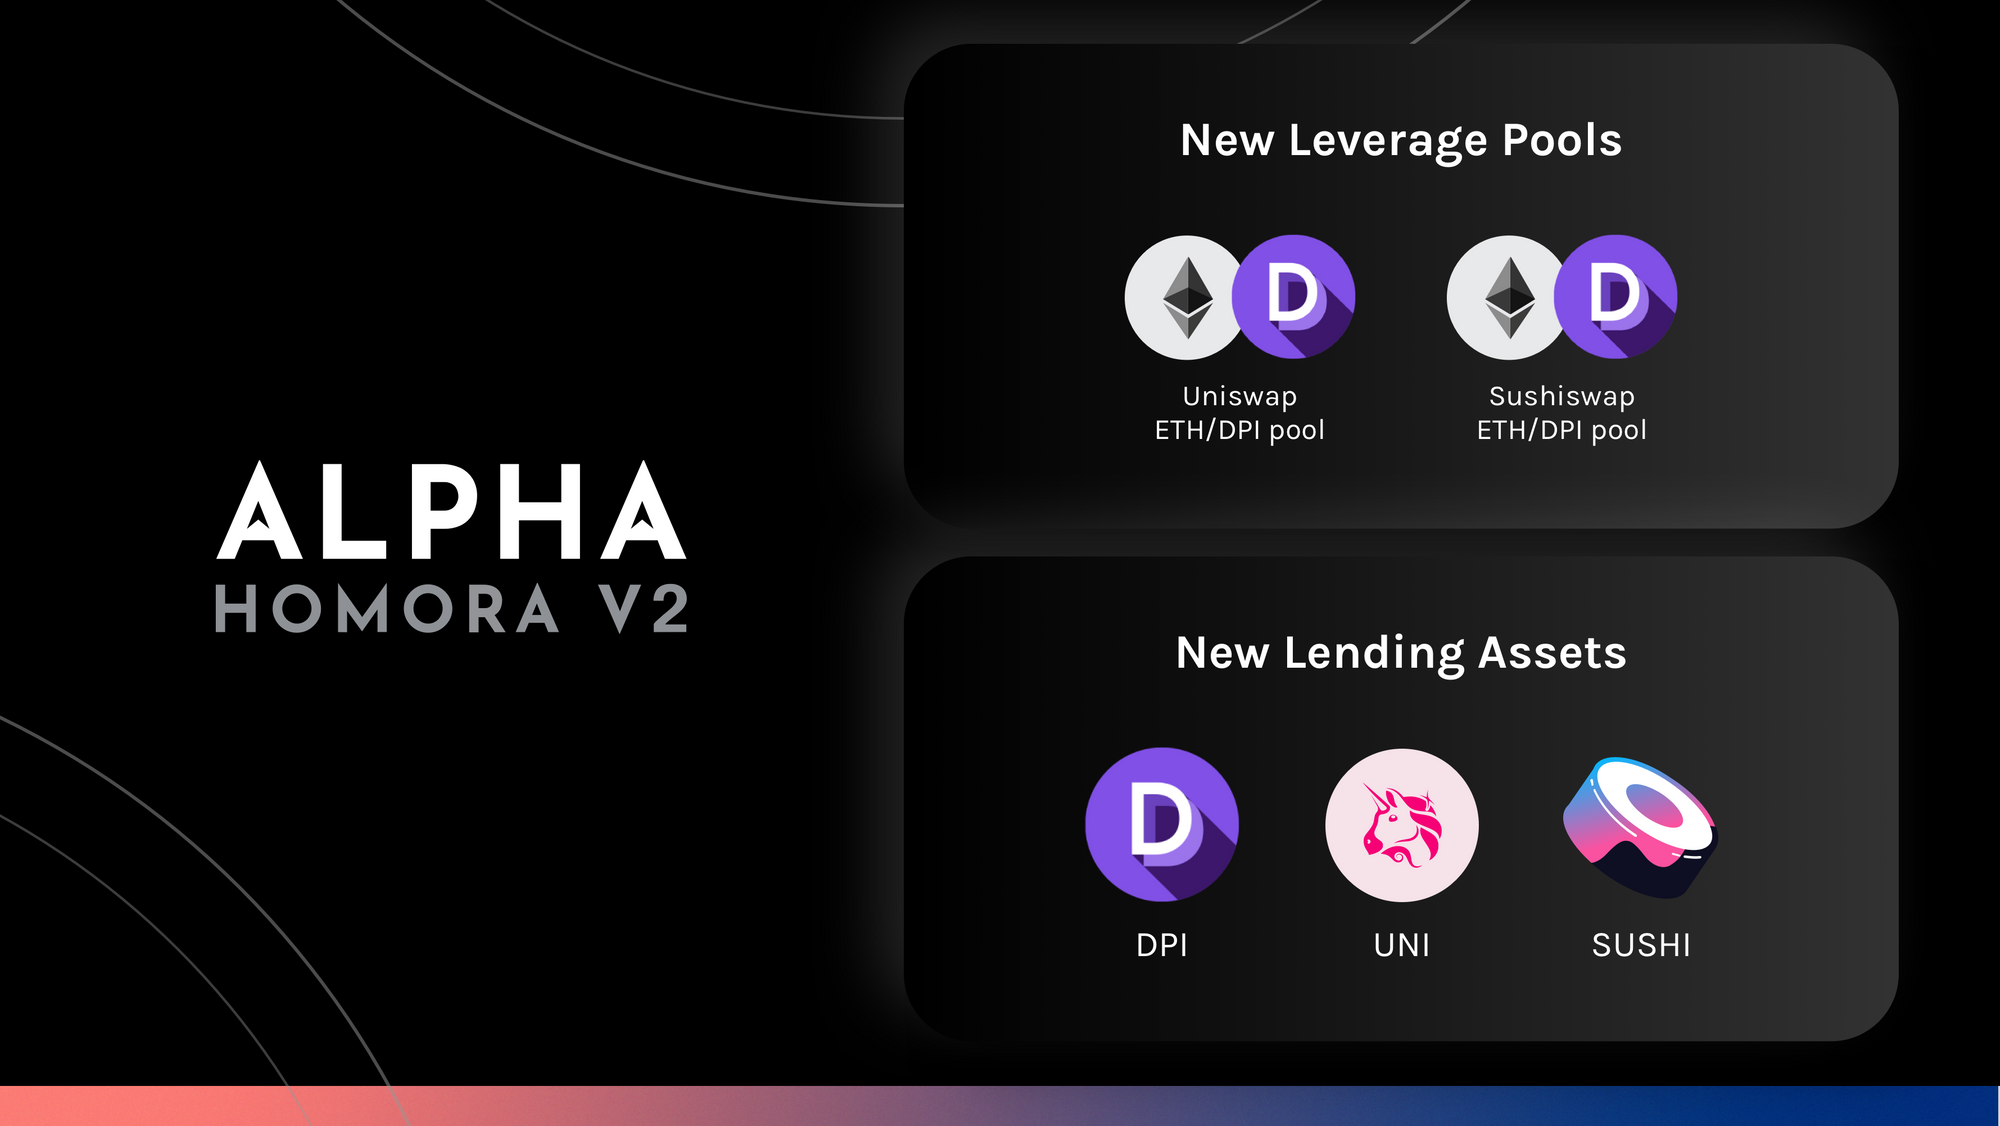 Alpha Homora V2 - New Leveraged Pools & New Lending Assets